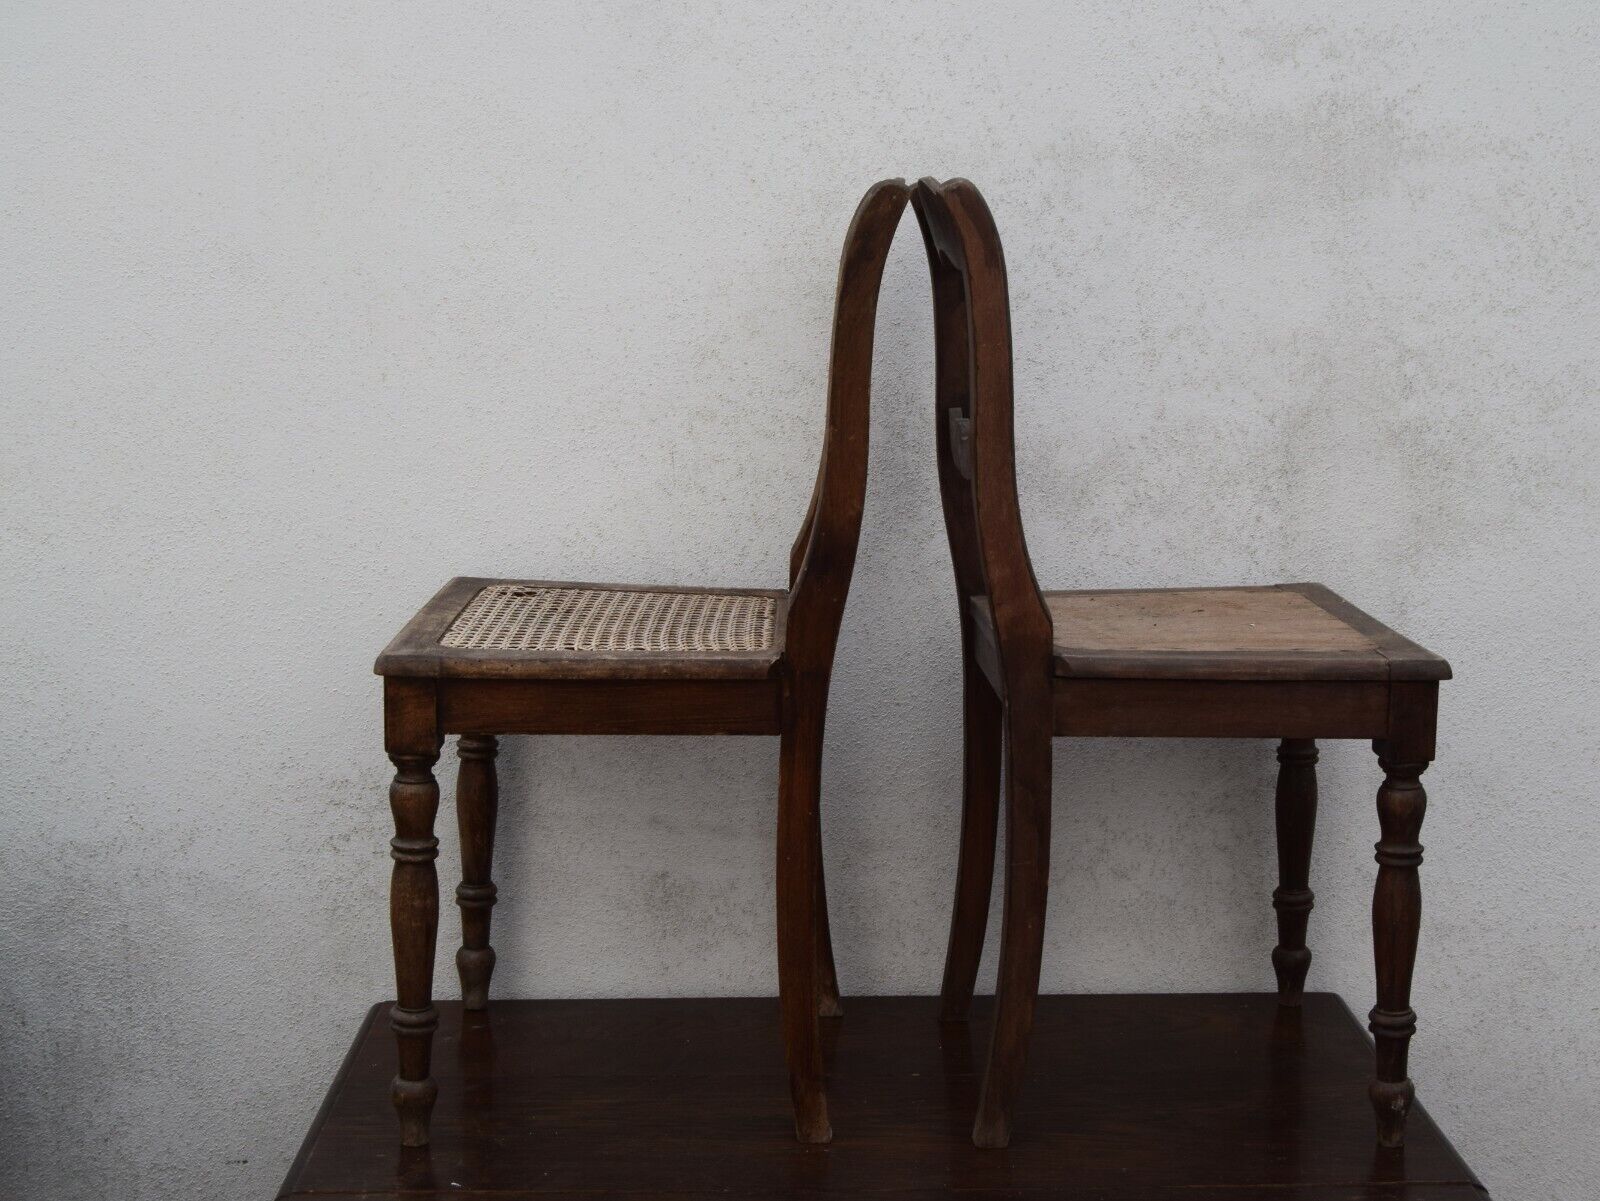 2 krzesła pubowe Krzesła kuchenne Gründerzeit/Historyzm Przełom wieków Nowy przyjazd, niska cena